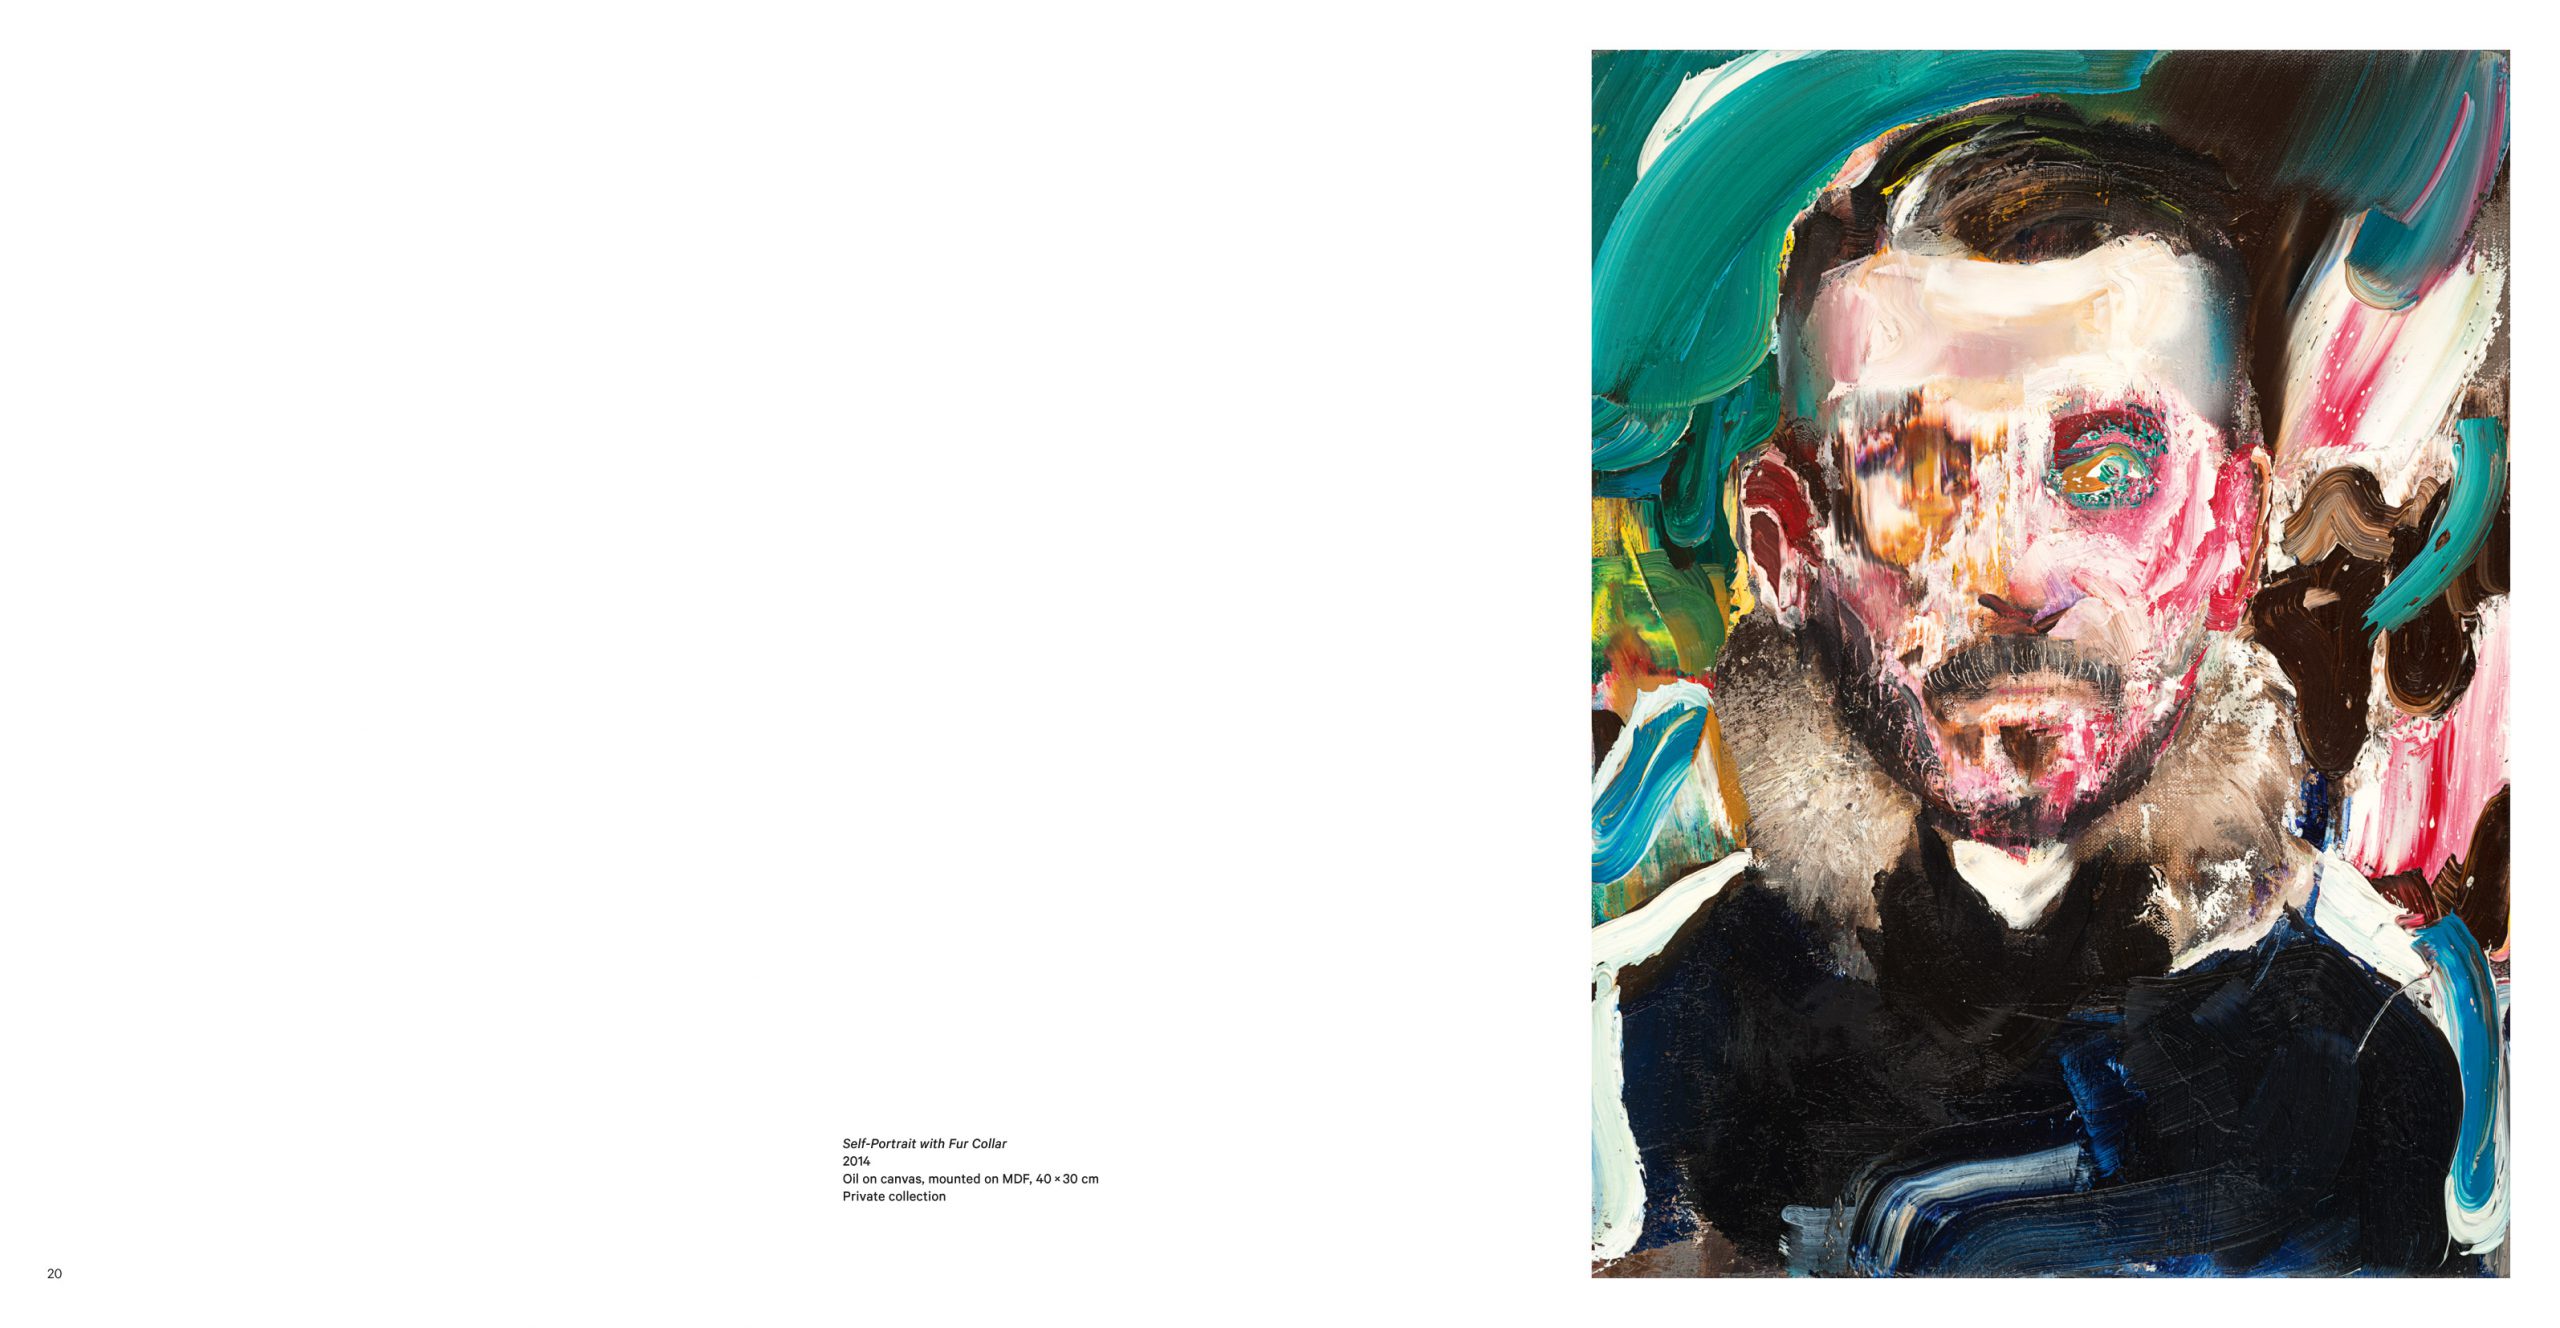 2020 Adrian Ghenie: Paintings 2014—19